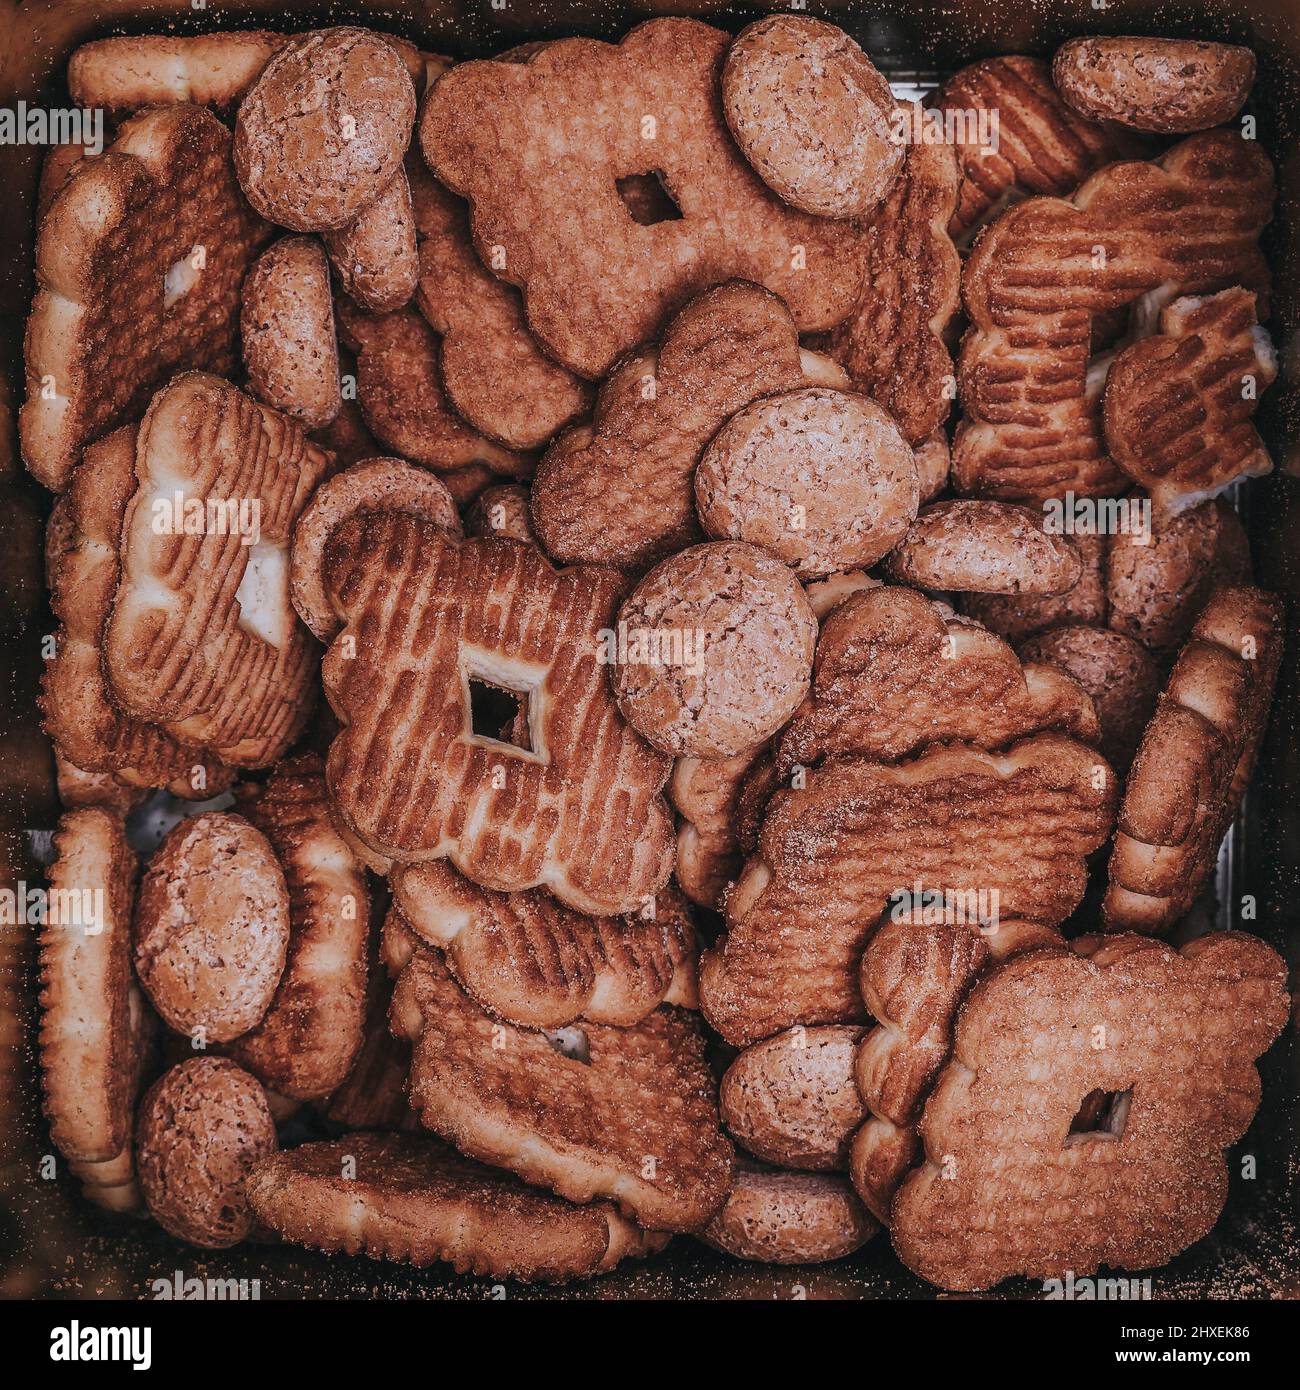 Motif de biscuits de différentes formes à l'intérieur d'une boîte carrée d'étain réfléchissant Banque D'Images